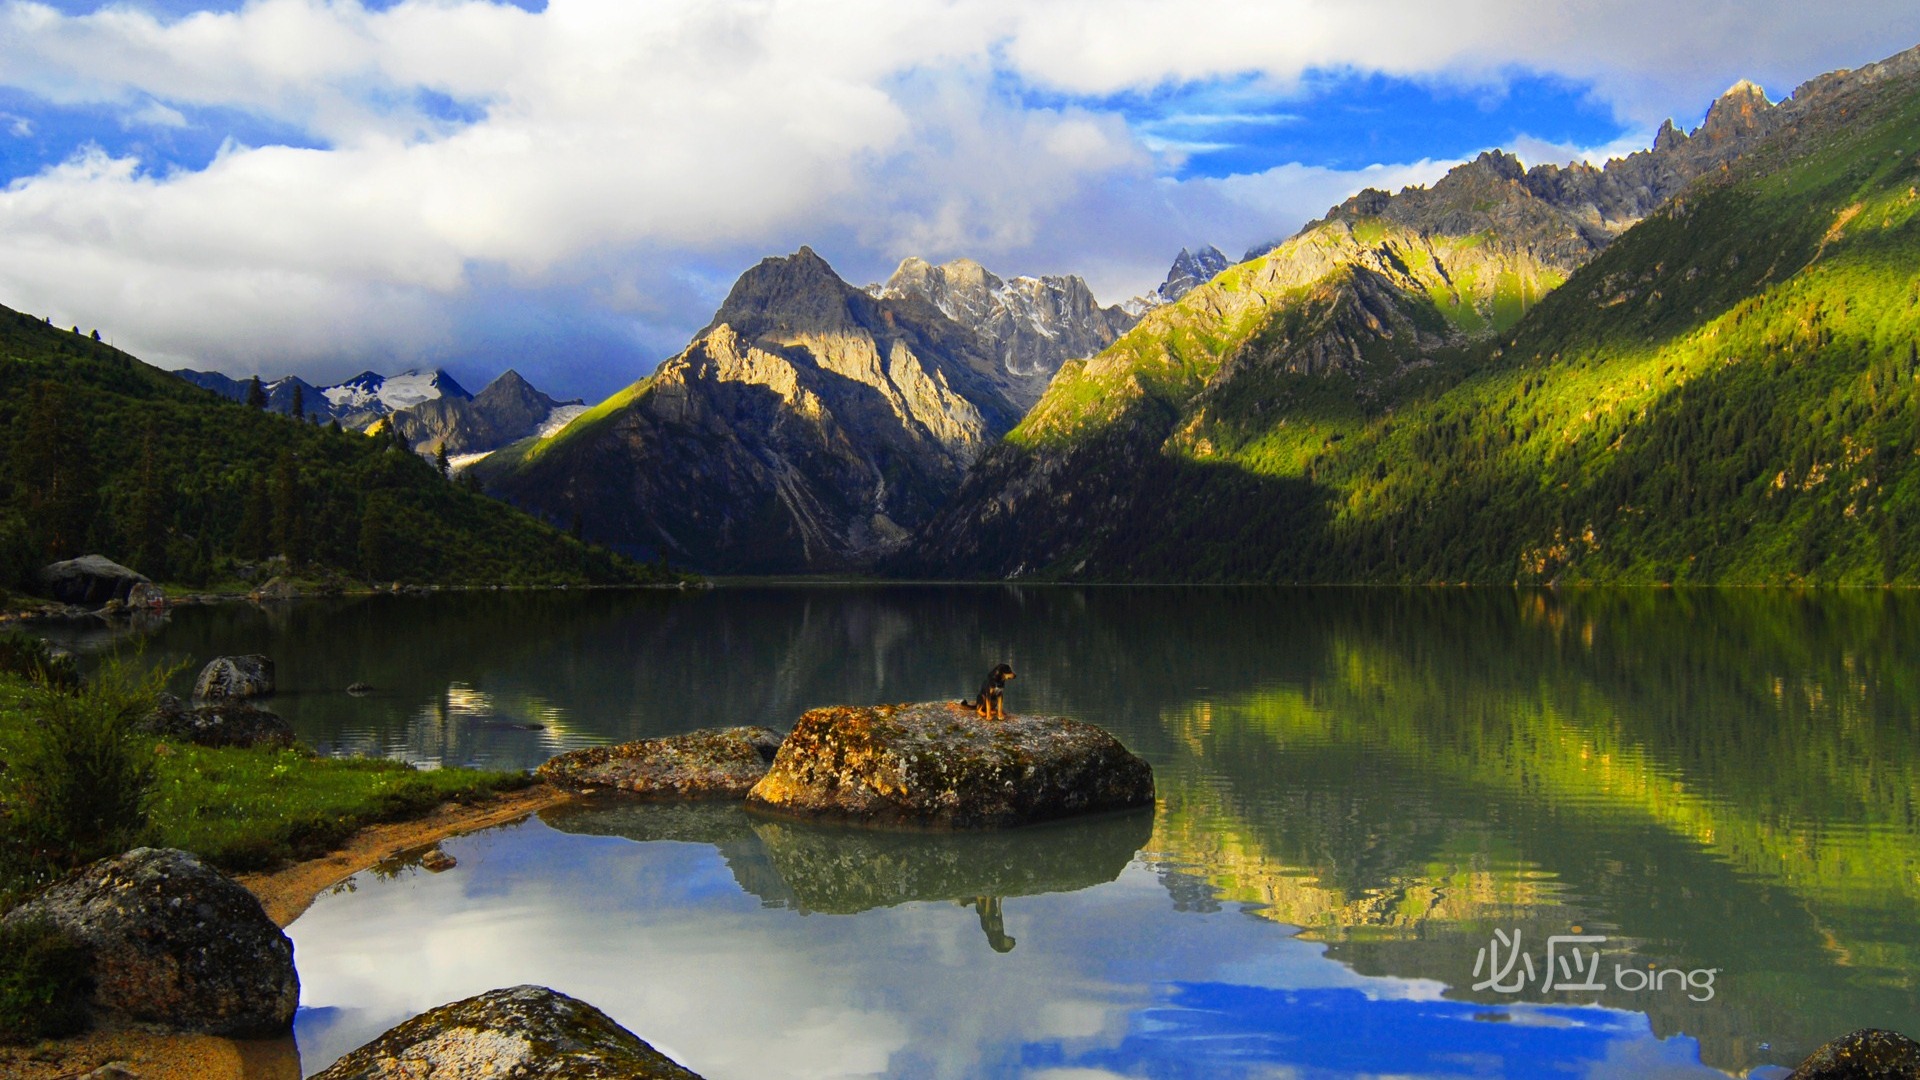 Hãy tải miễn phí chủ đề Microsoft Bing Landscape Theme Desktop Wallpaper 17 để cảm nhận vẻ đẹp hoang sơ nhưng tuyệt đẹp của thiên nhiên. Trải nghiệm sự kết hợp đầy tinh tế giữa màu sắc và ánh sáng để tạo nên những hình ảnh động đẹp mắt trên màn hình máy tính của bạn. Hãy thả mình vào không gian thăng hoa của chủ đề này.